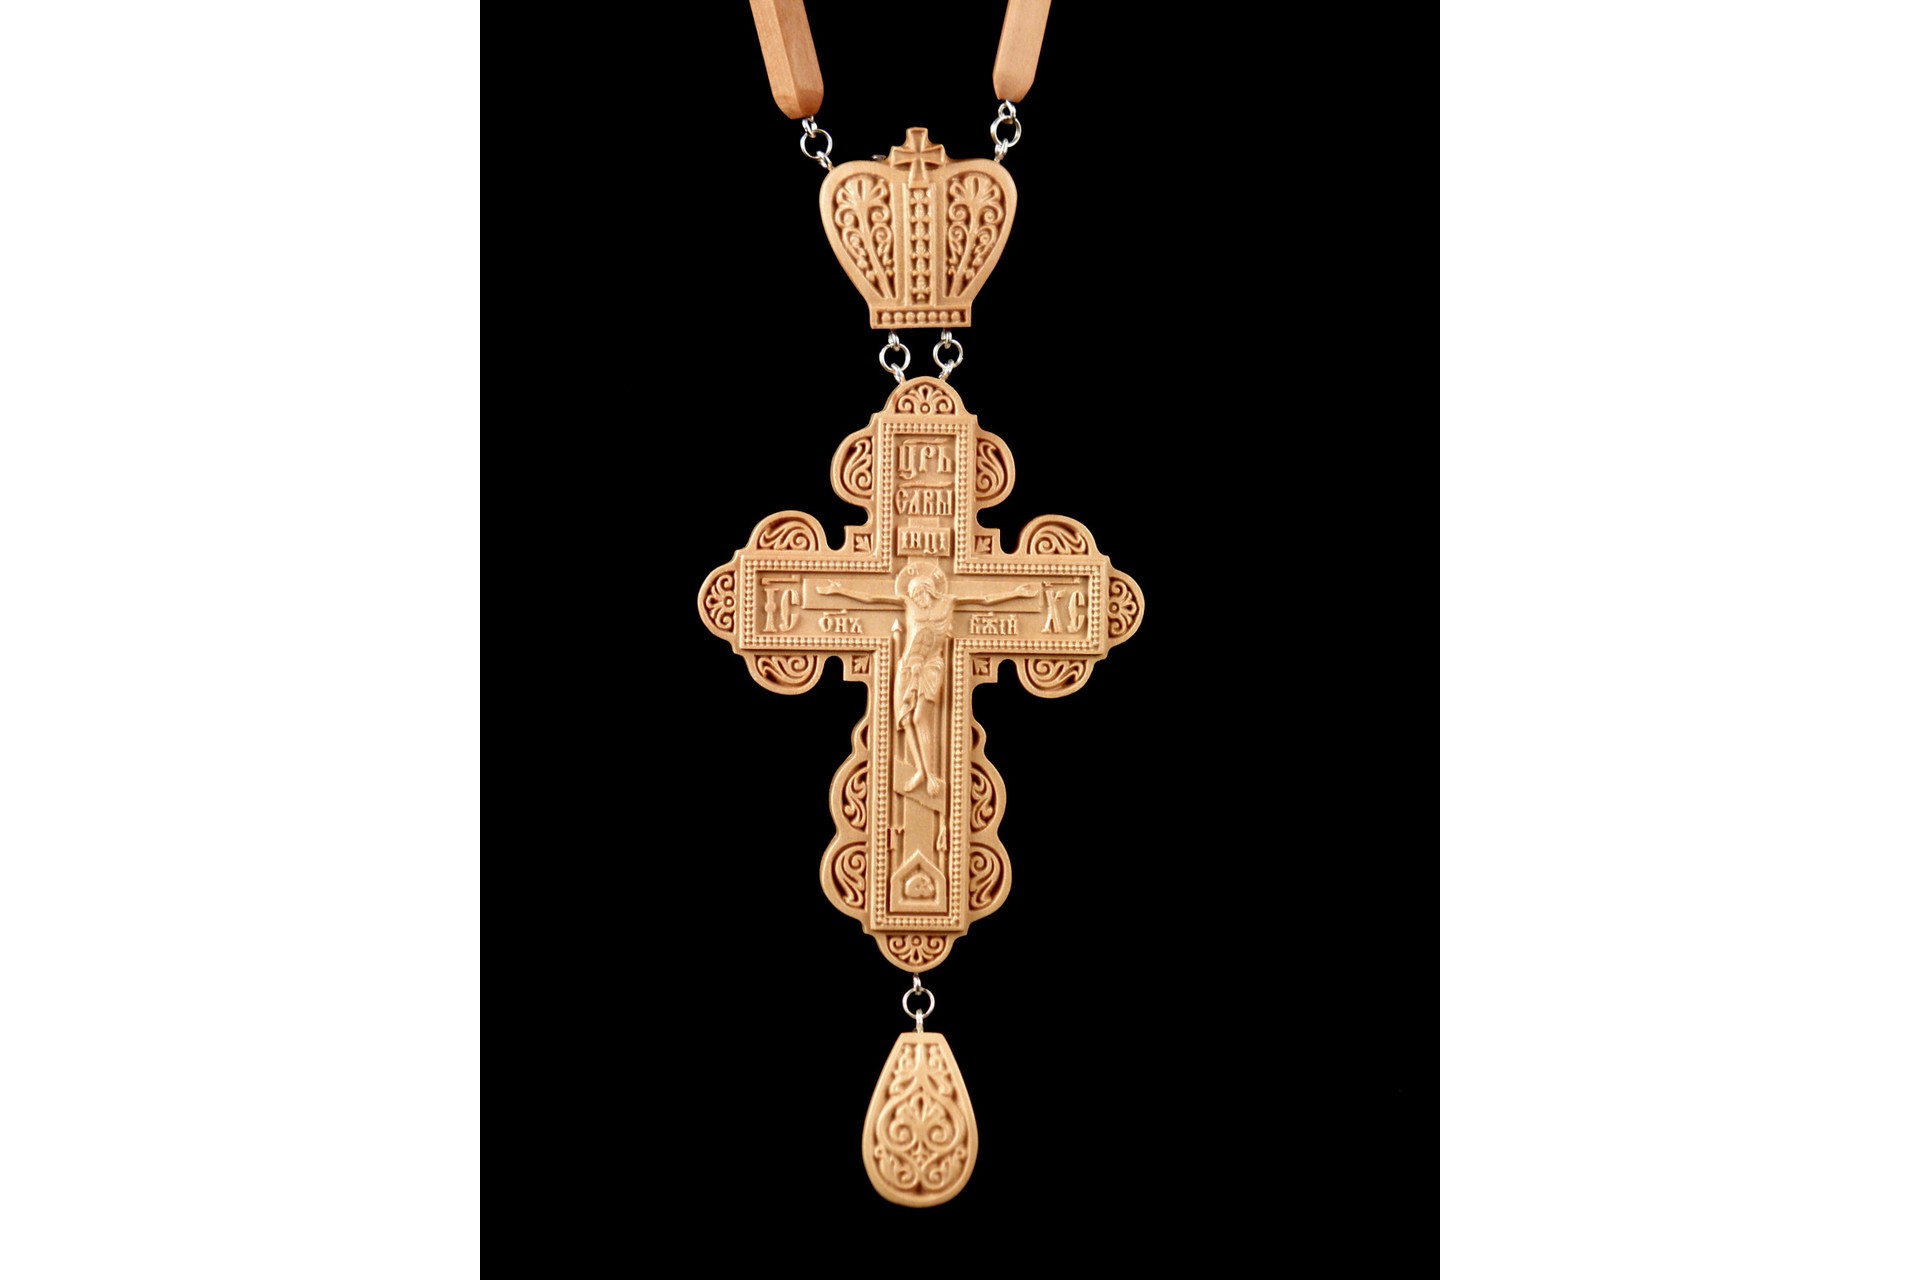  Wooden Pectoral Cross   36-04